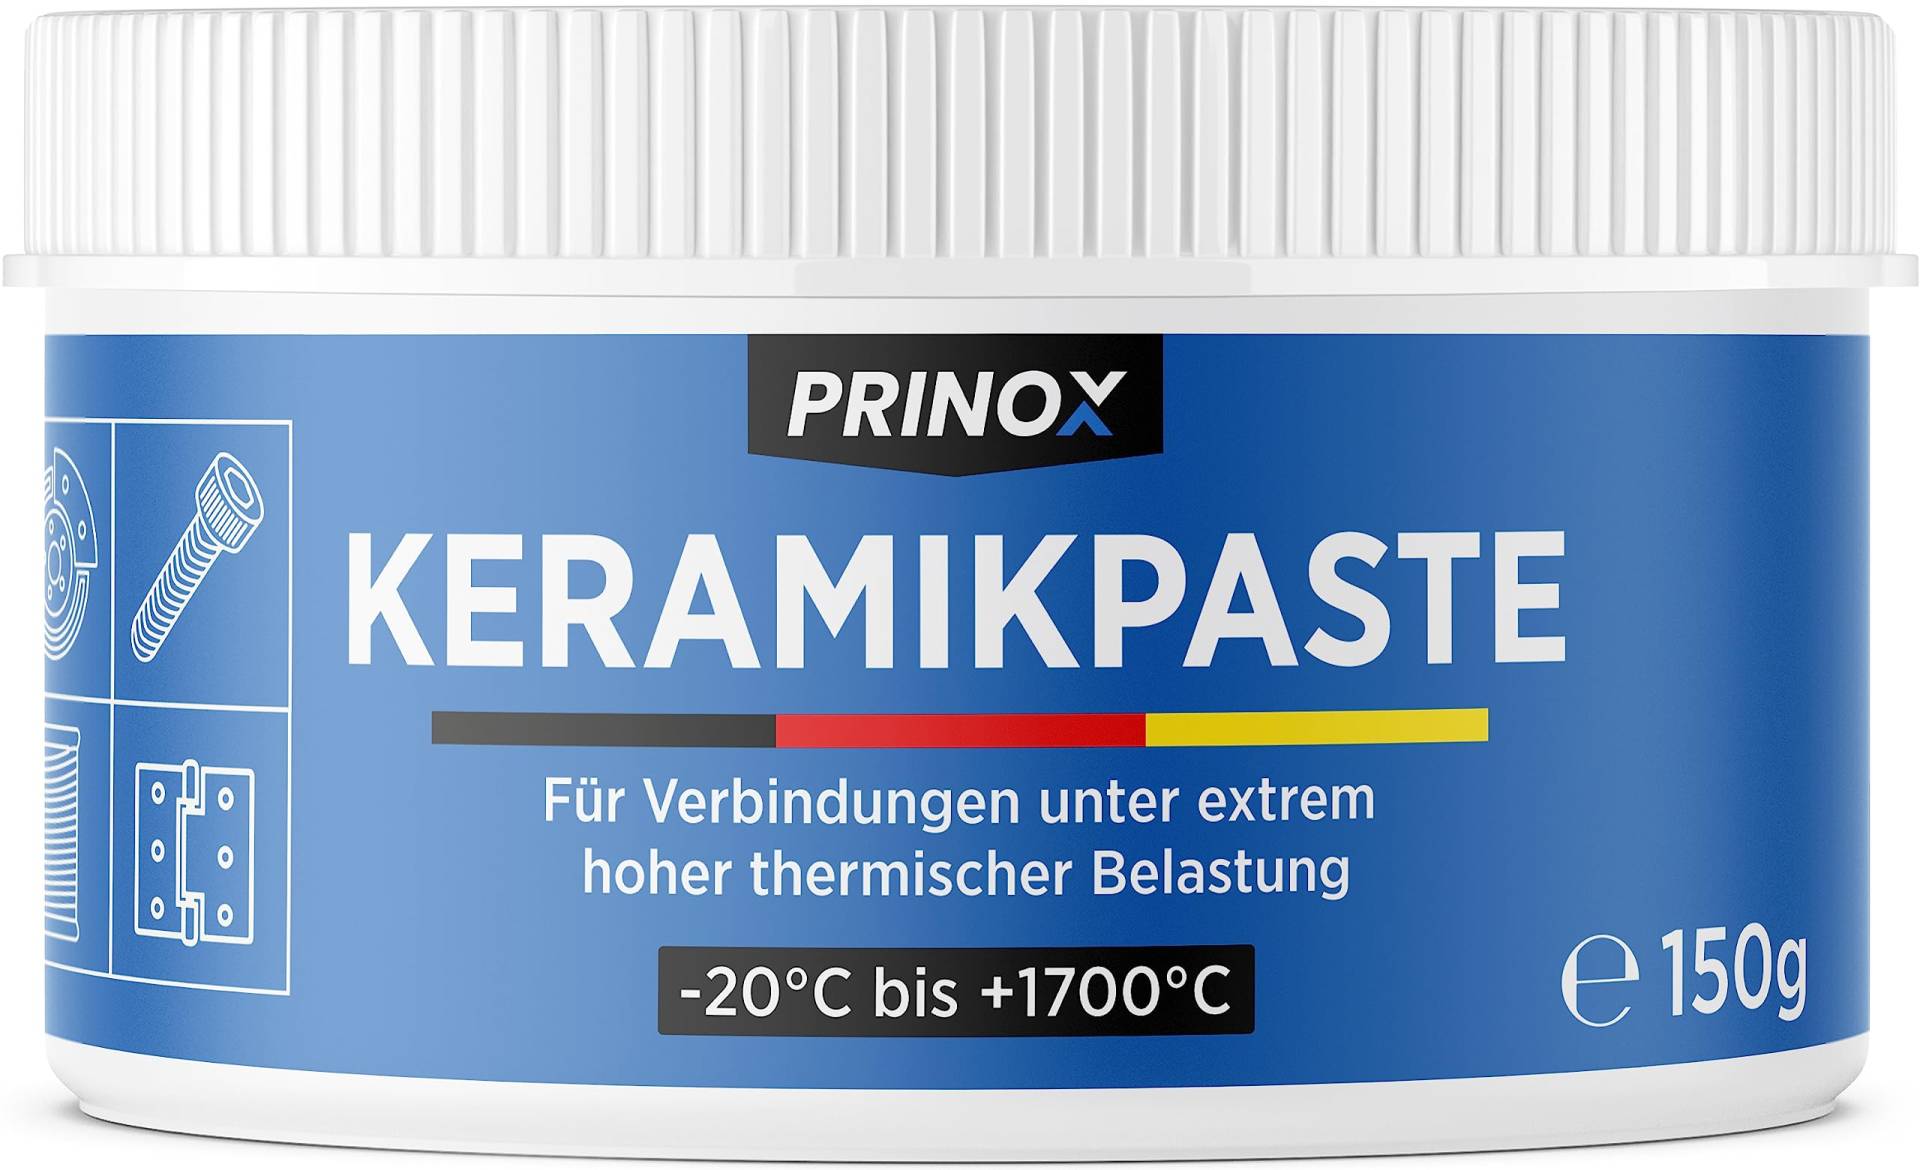 Prinox Profi Keramikpaste 150g - Extrem Hitzebeständig bis +1700°C - Keramik Paste für KFZ Bremsen, Auspuff, als Schmierpaste und Langzeitfett für Schrauben, Bremspaste etc. von Prinox